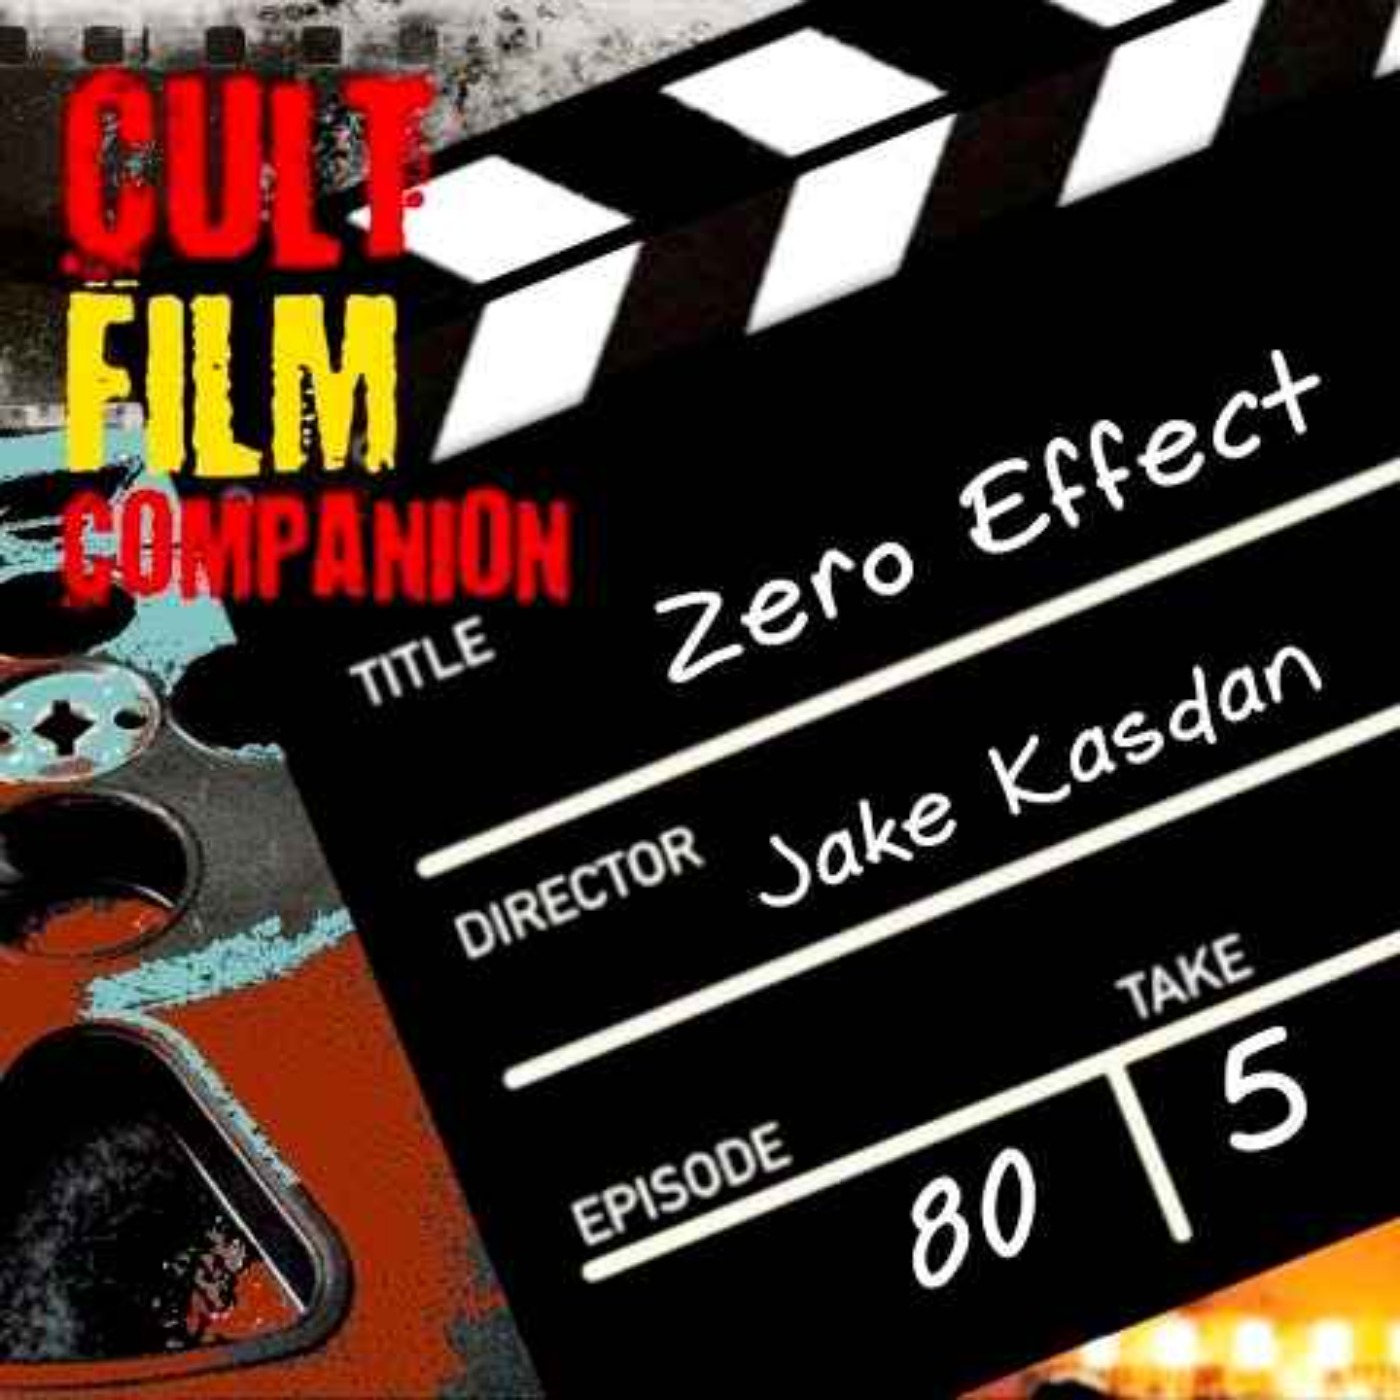 Ep. 80 Zero Effect directed by Jake Kasdan